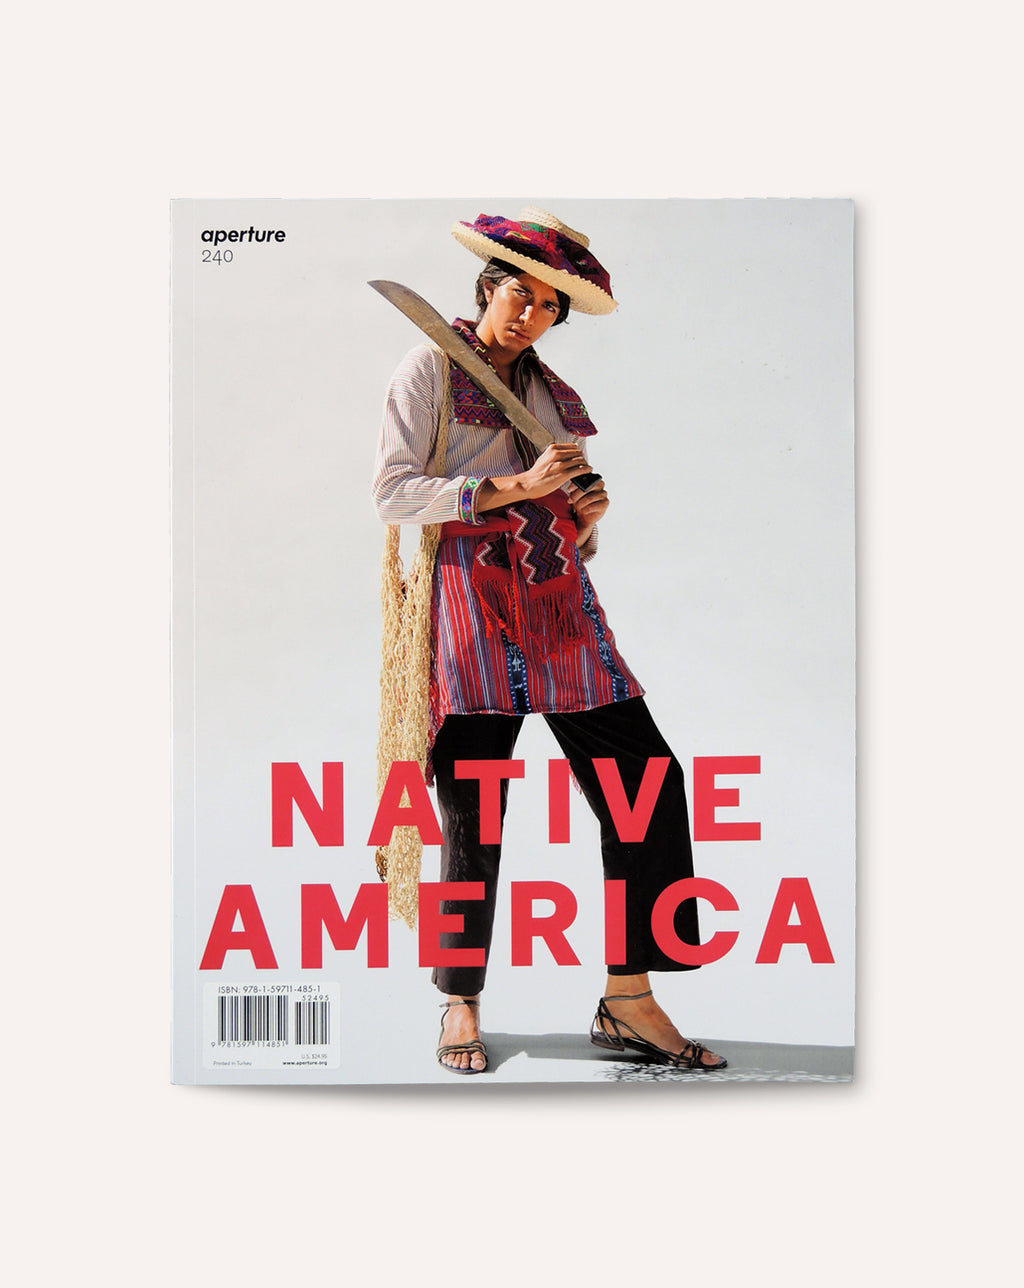 Native America (Aperture 240)